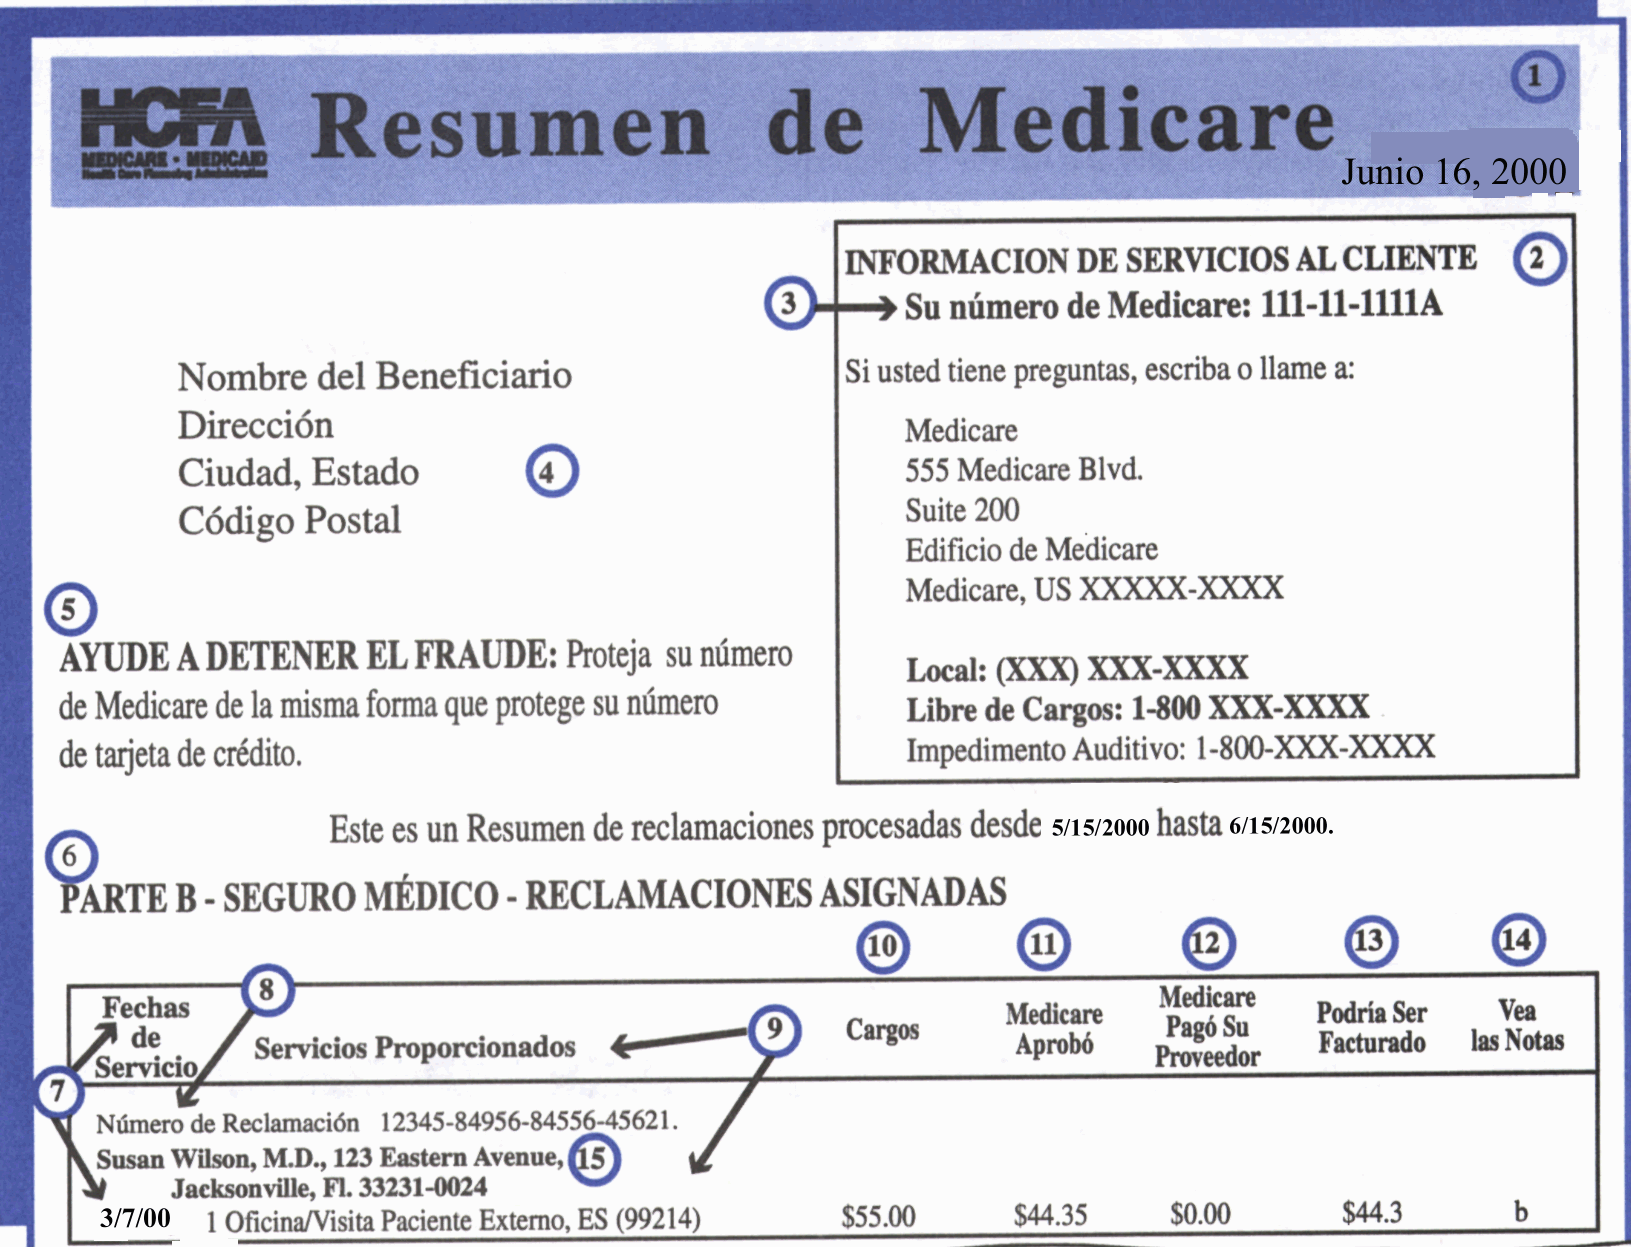 Imagen de un ejemplo de un Resumen de Medicare